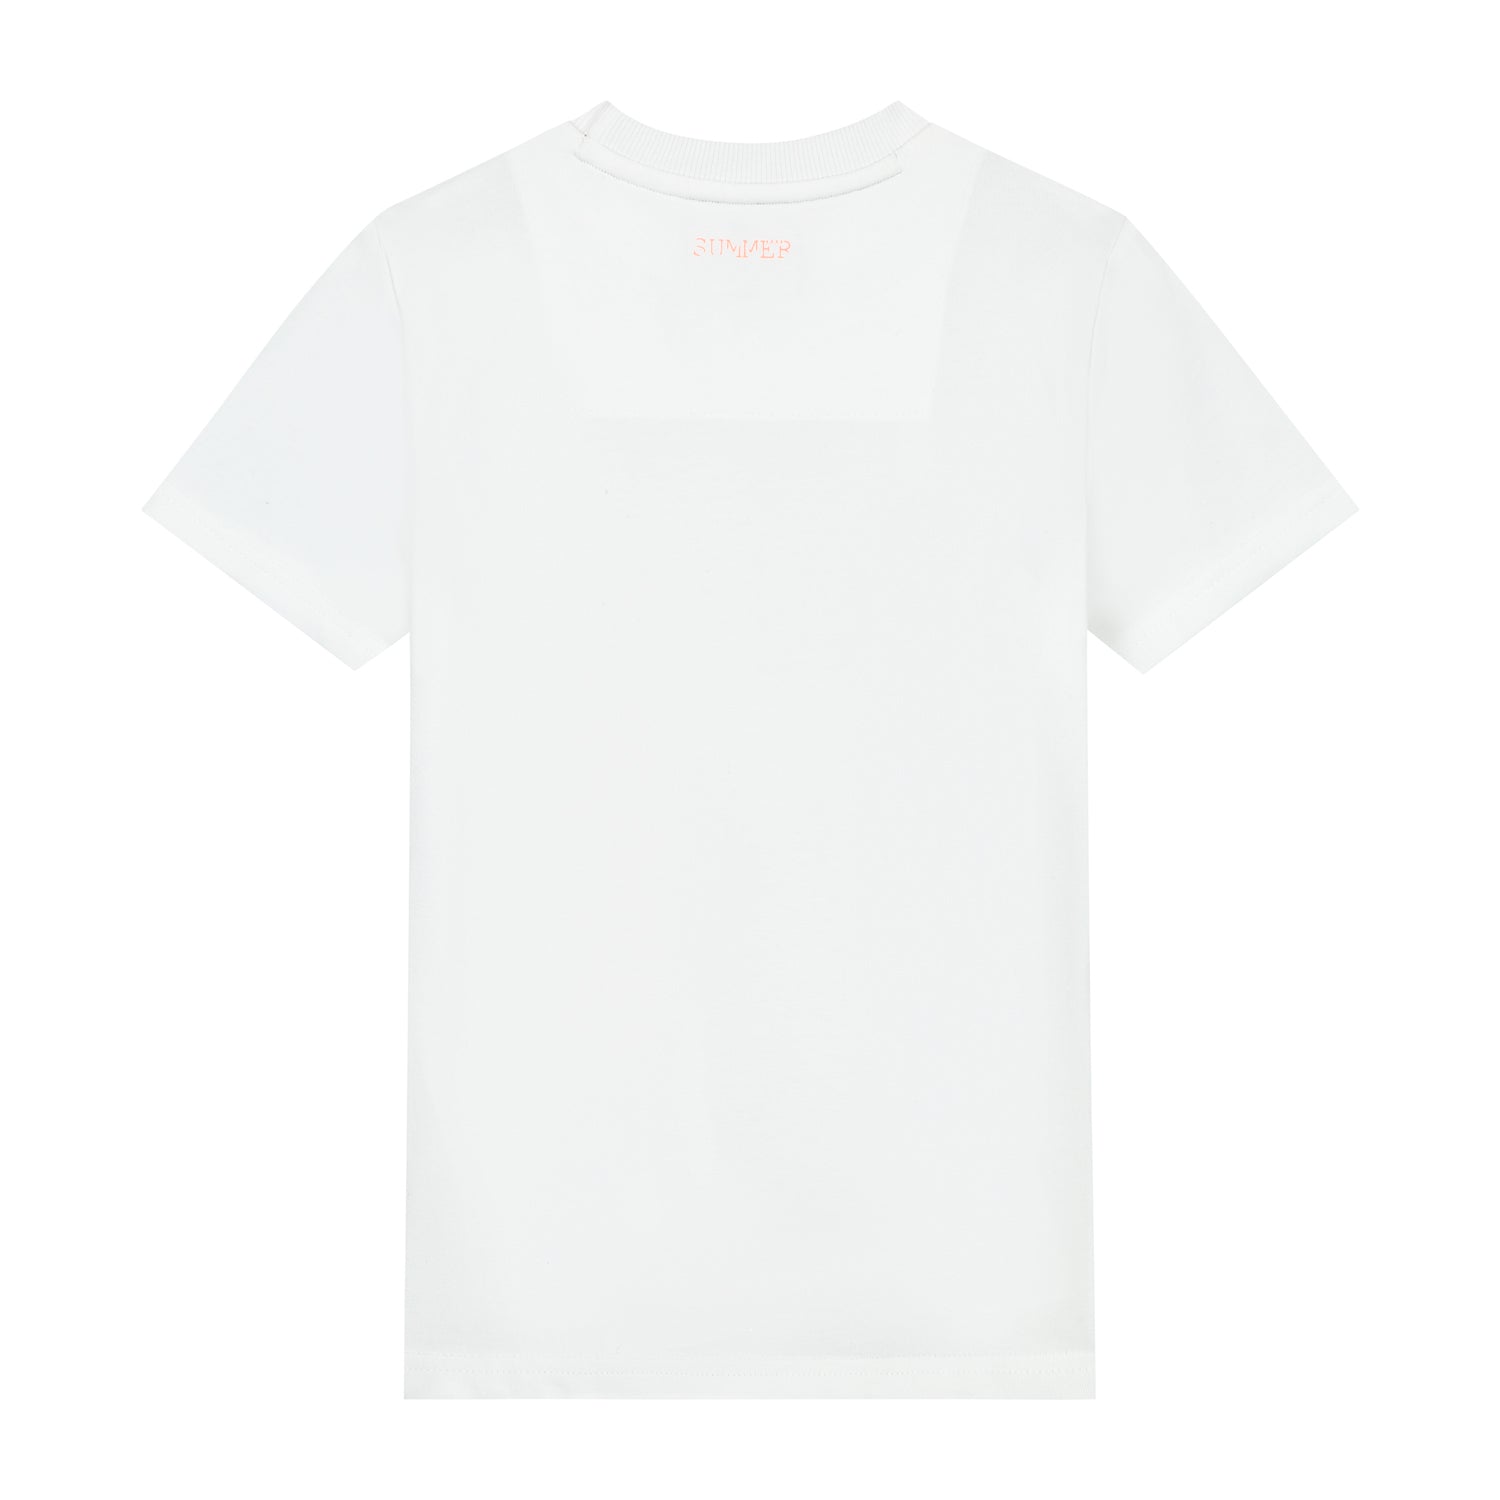 Skurk T-shirt Toer White